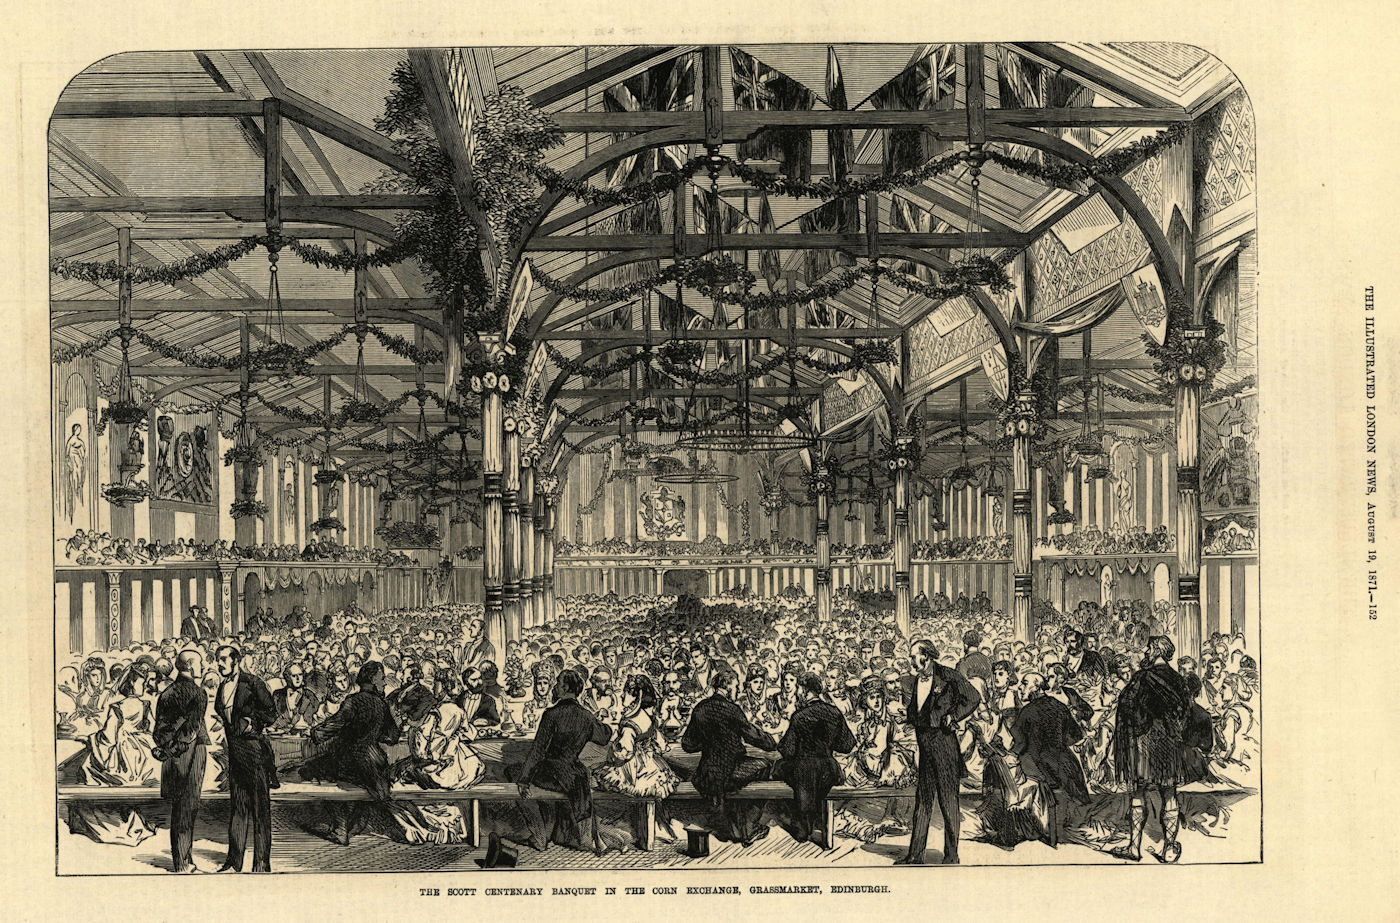 The Scott Centenary banquet in the Corn Exchange, Grassmarket, Edinburgh 1871